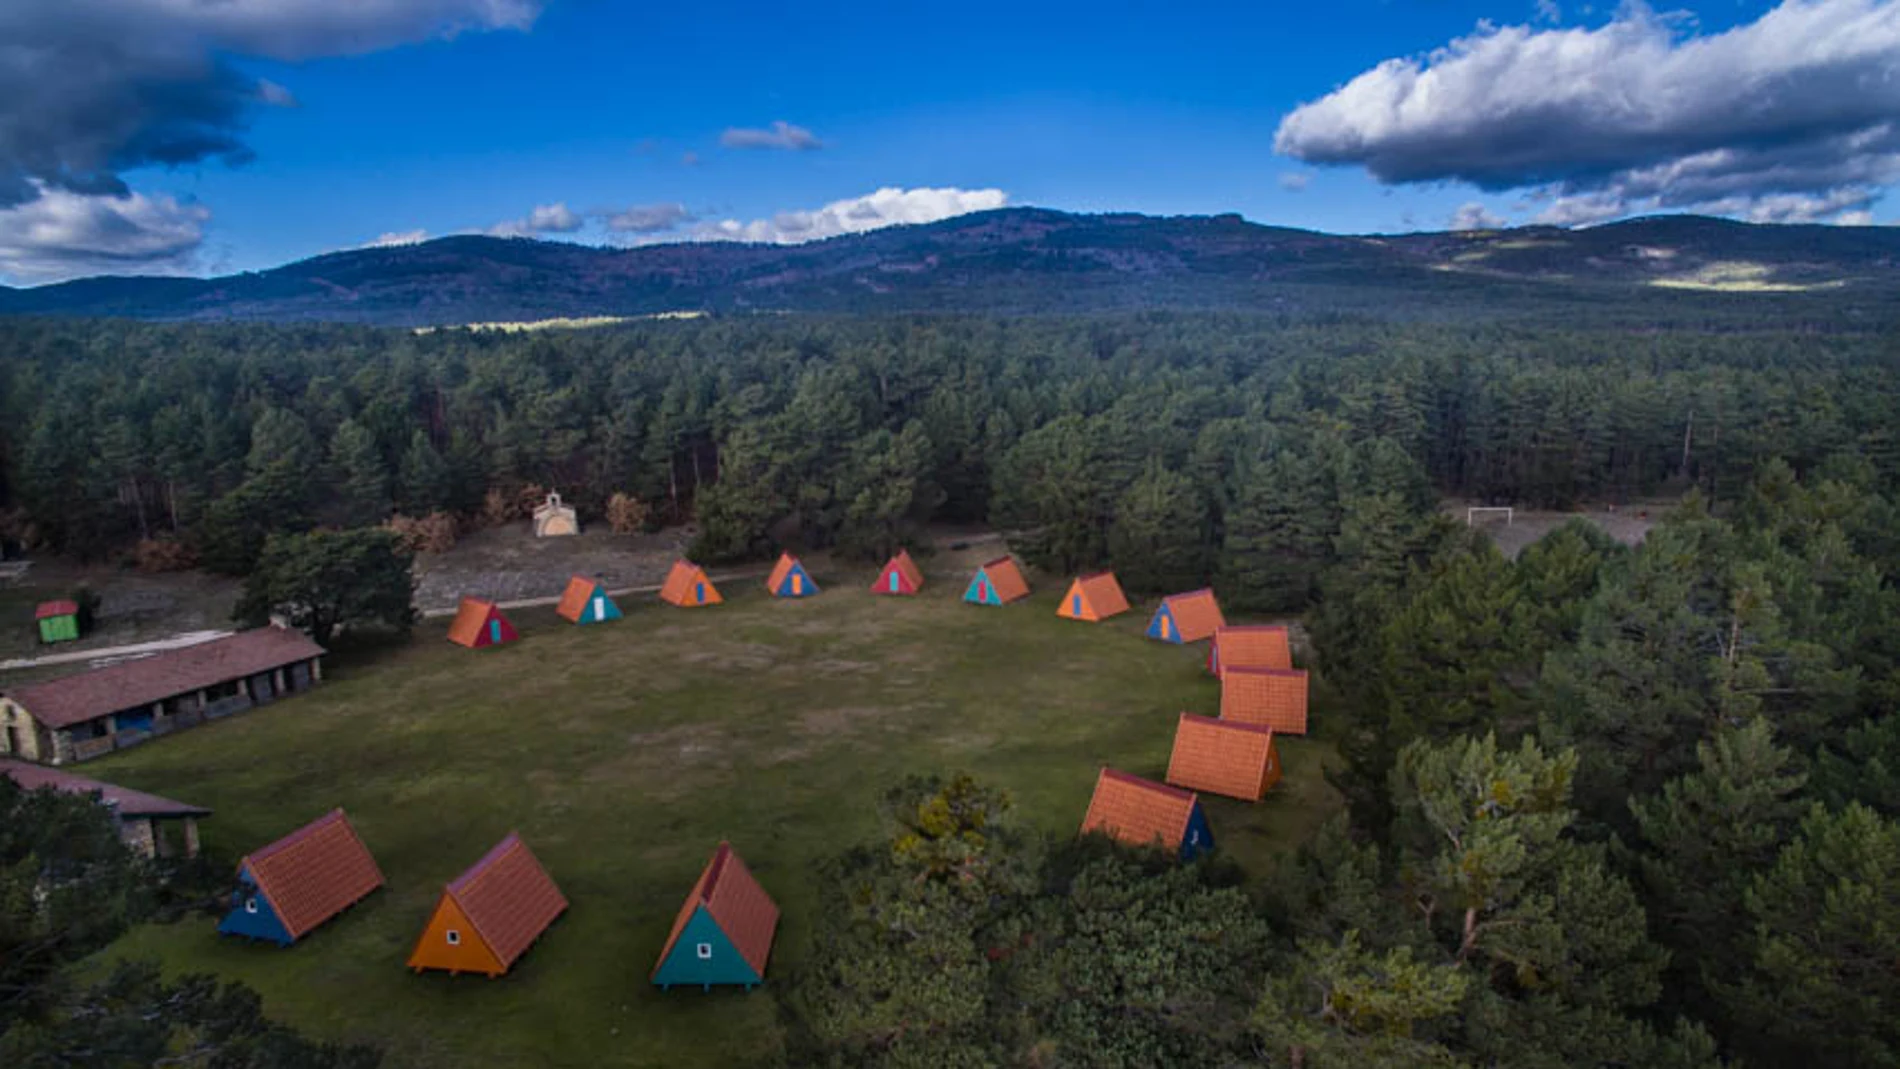 Imagen aérea del campamento de verano RockCamp en las instalaciones de Sotolengo